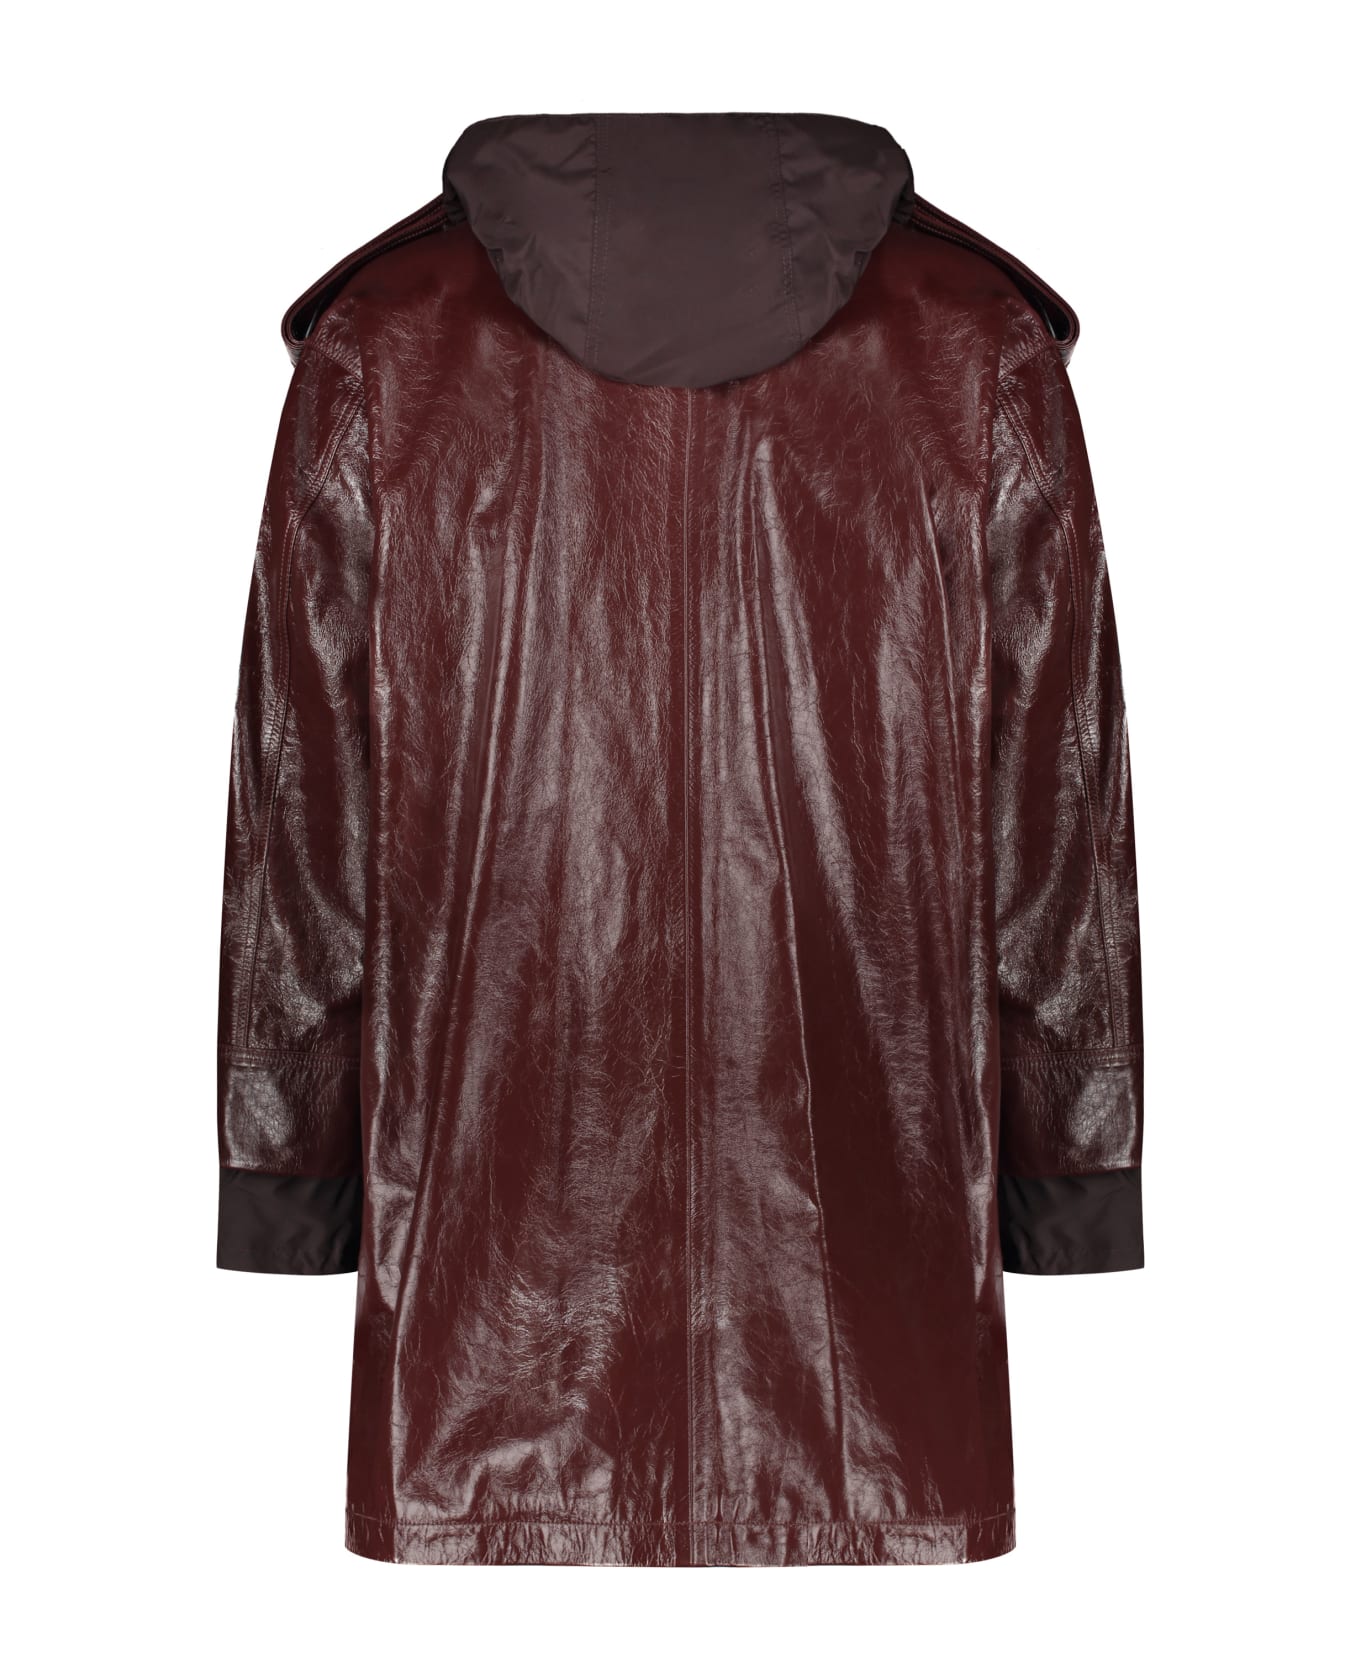 AMBUSH Hooded Leather Jacket - Burgundy コート